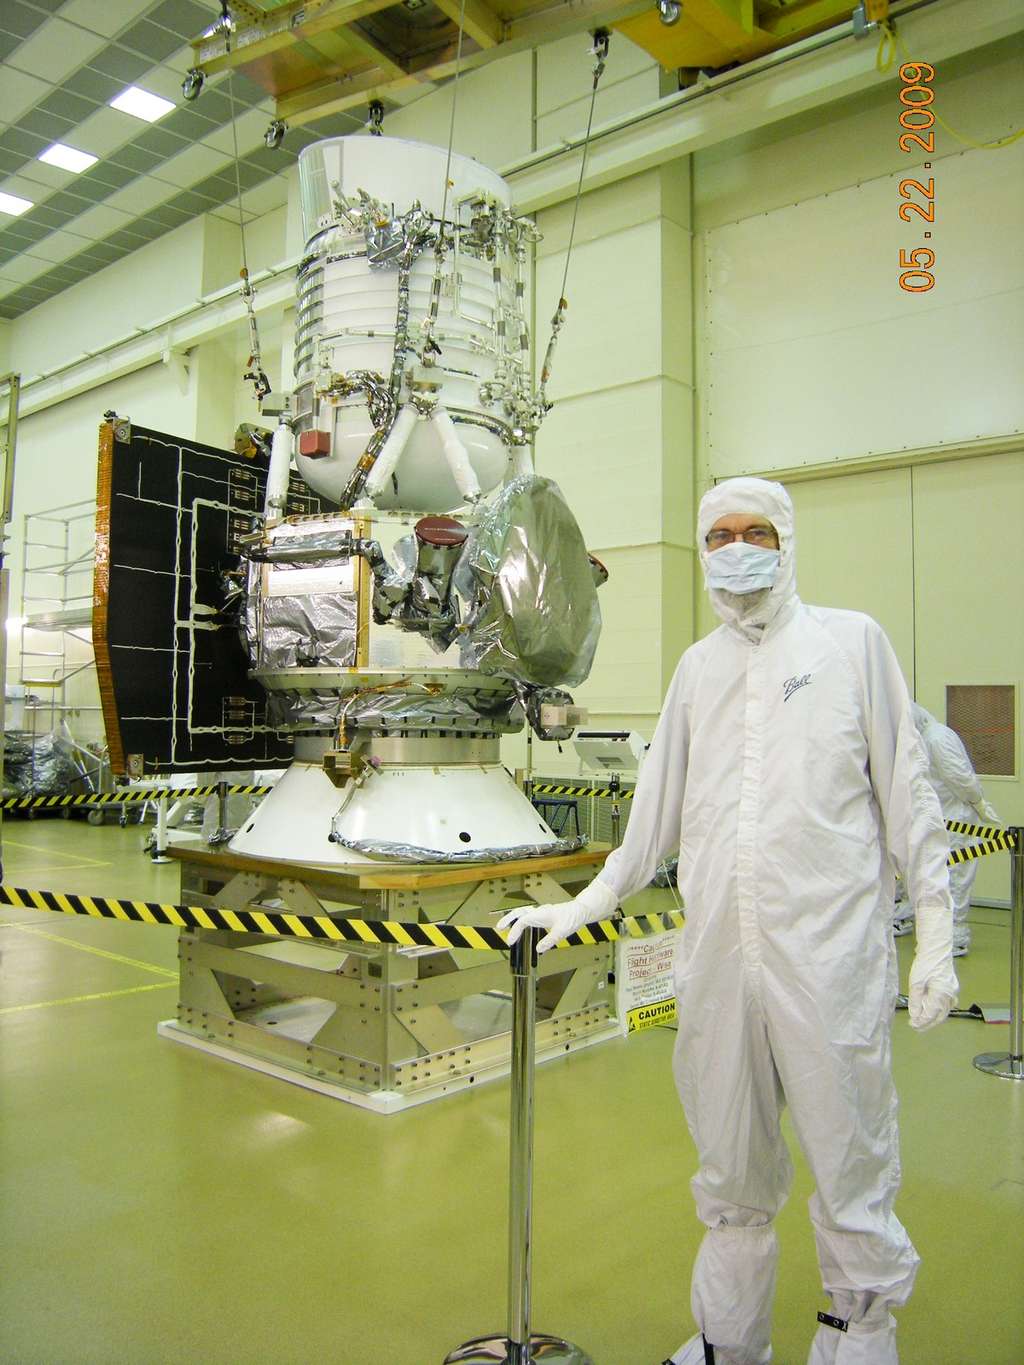  <br />Le satellite Wise en 2009 avant son lancement. Cet observatoire infrarouge a fait de nombreuses découvertes. © Nasa/JPL-Caltech/Wise